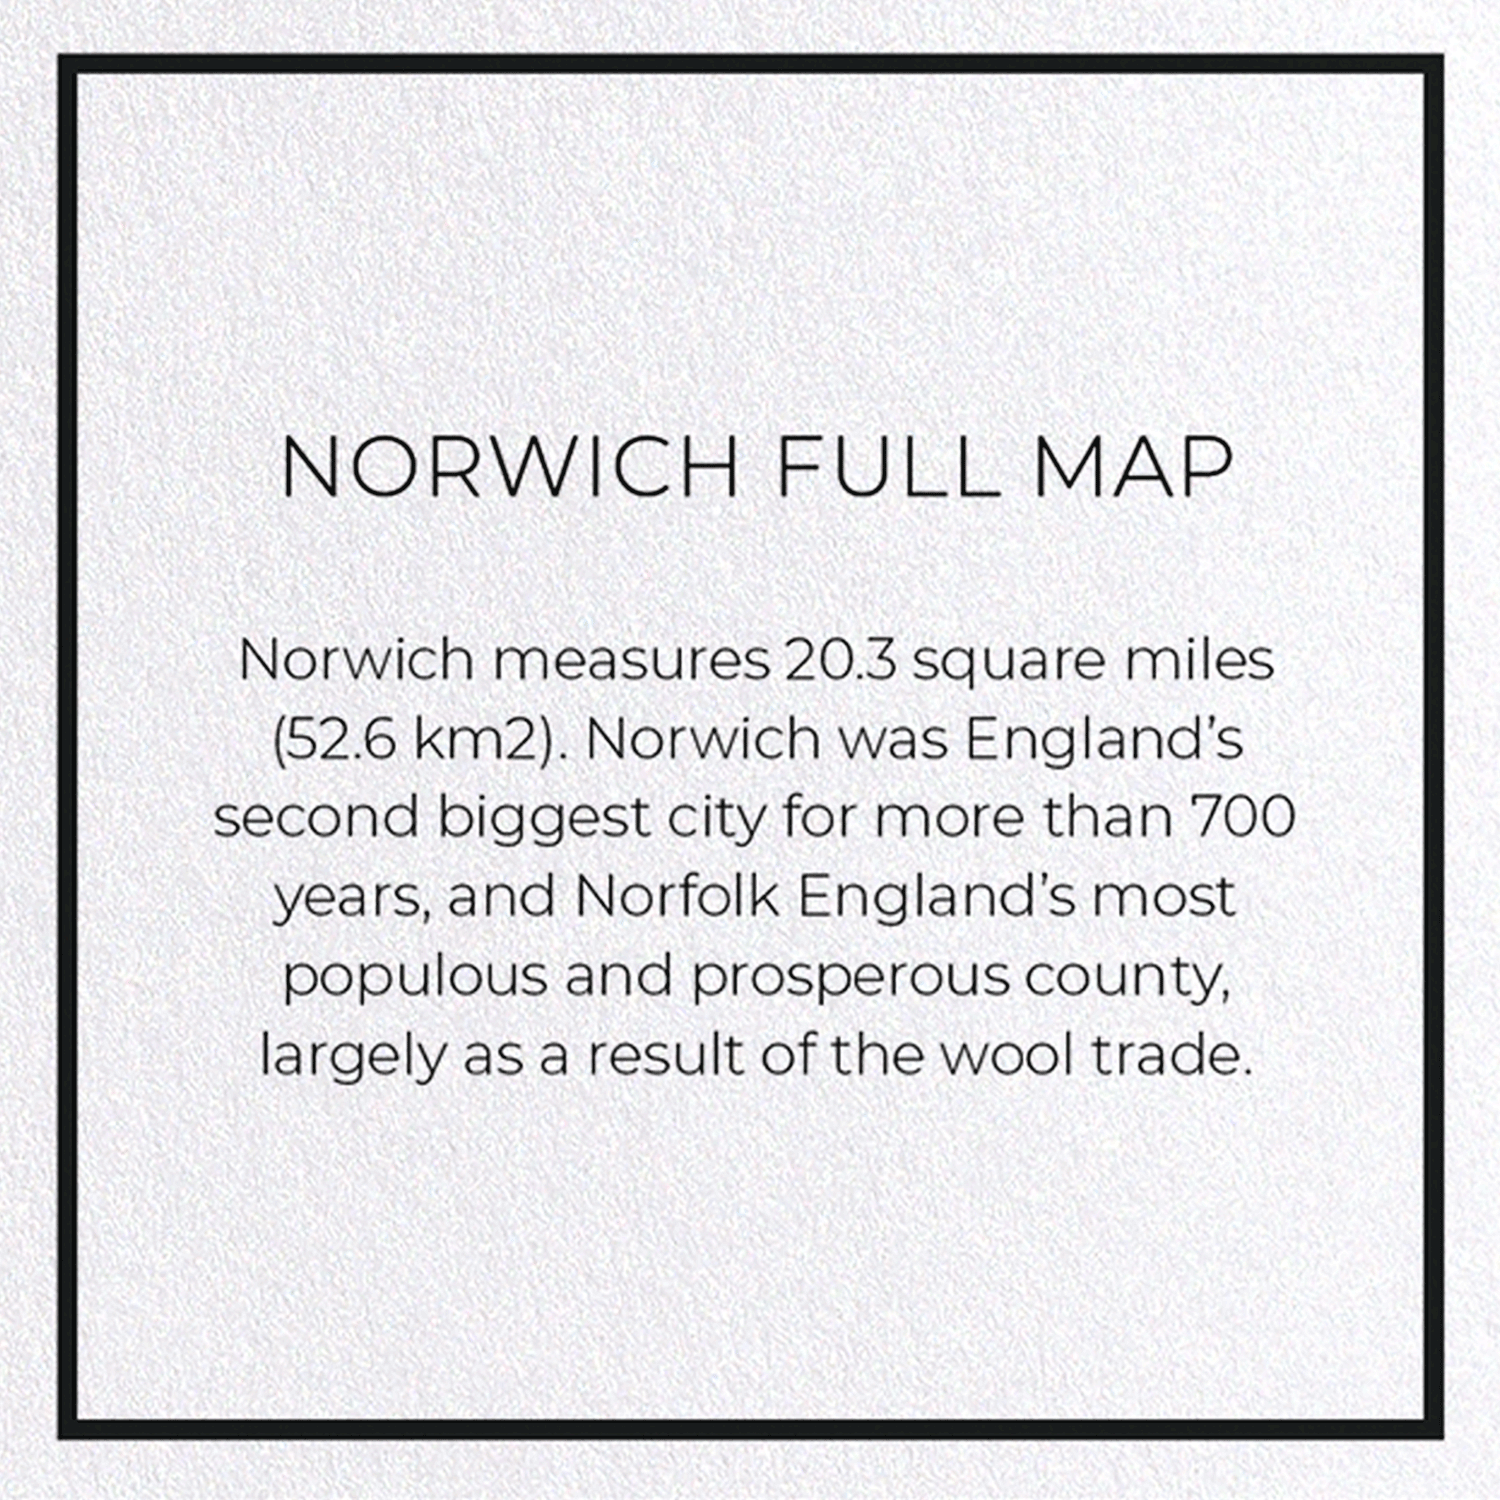 NORWICH FULL MAP